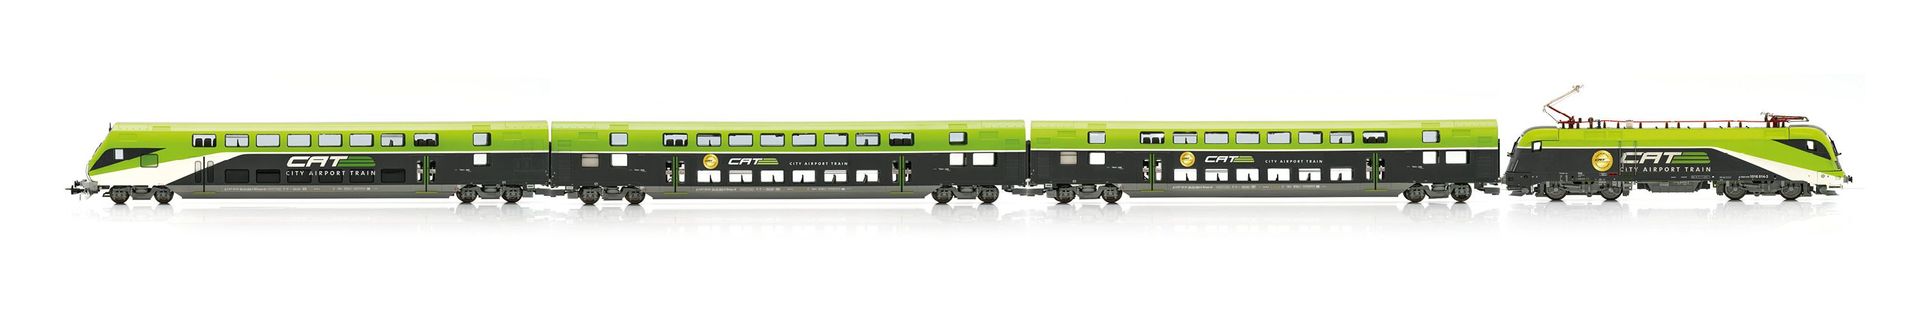 Jägerndorfer Modellbahn 10412 - Zugset CAT mit E-Lok BR 1016 und 3 Wagen ÖBB/CAT Ep.VI H0/WS Sound